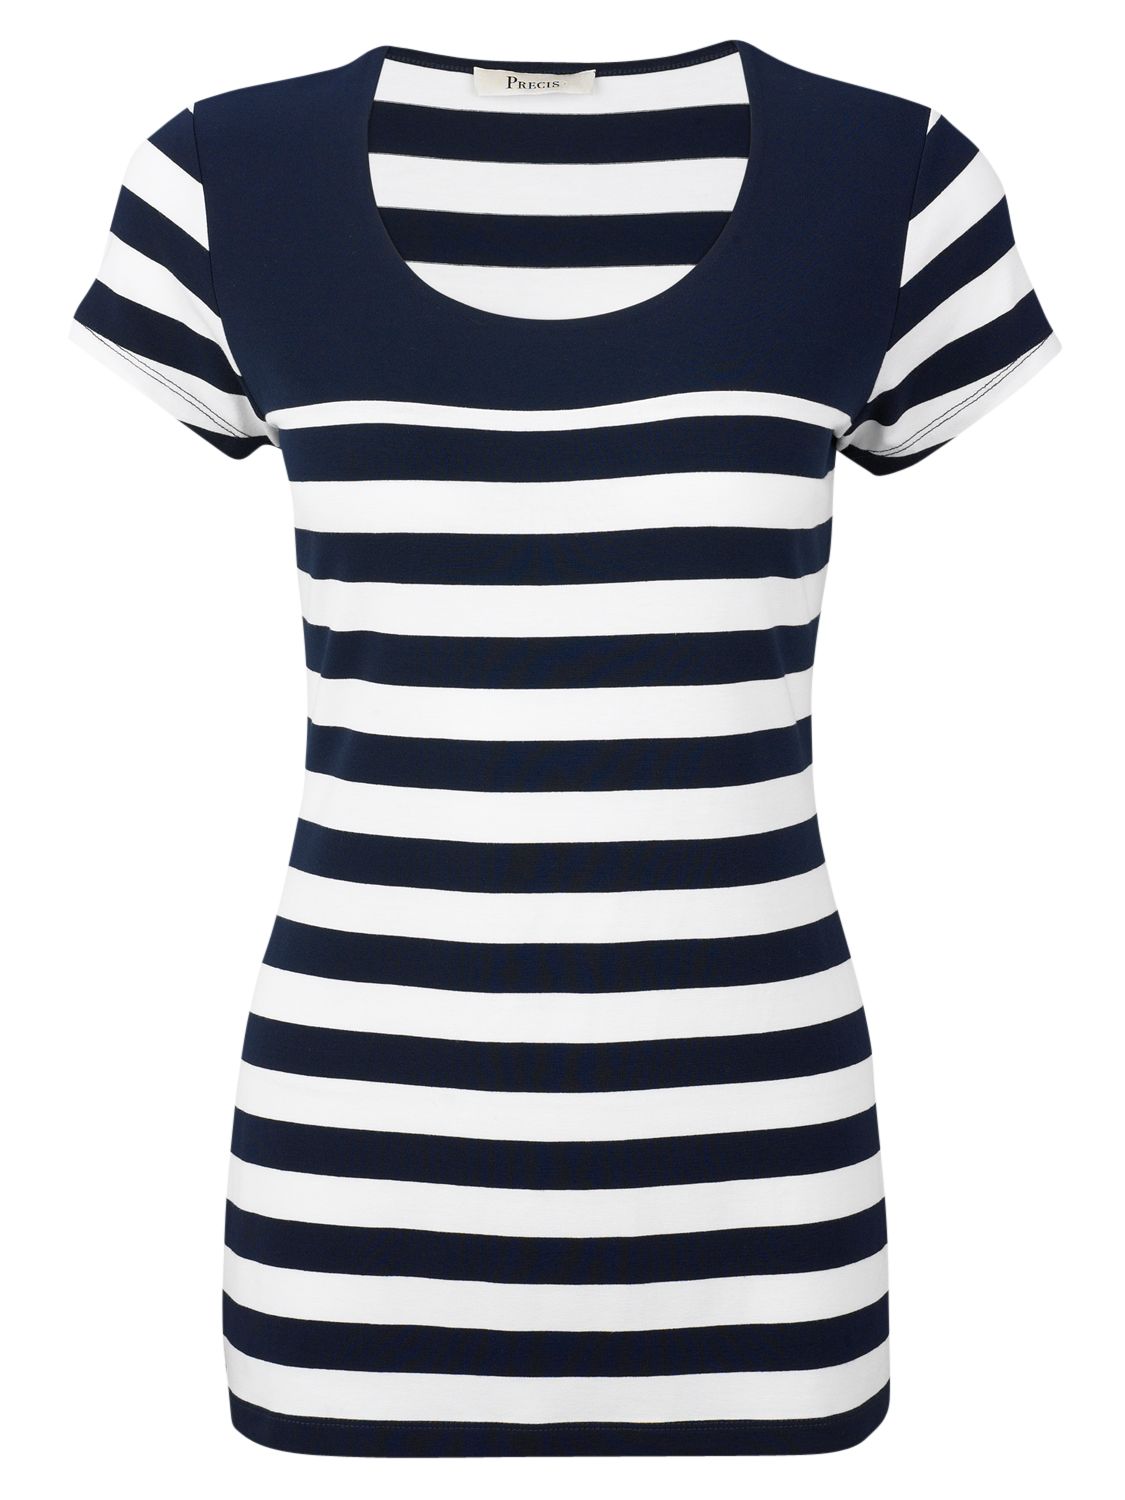 Breton Stripe Jersey T-Shirt,